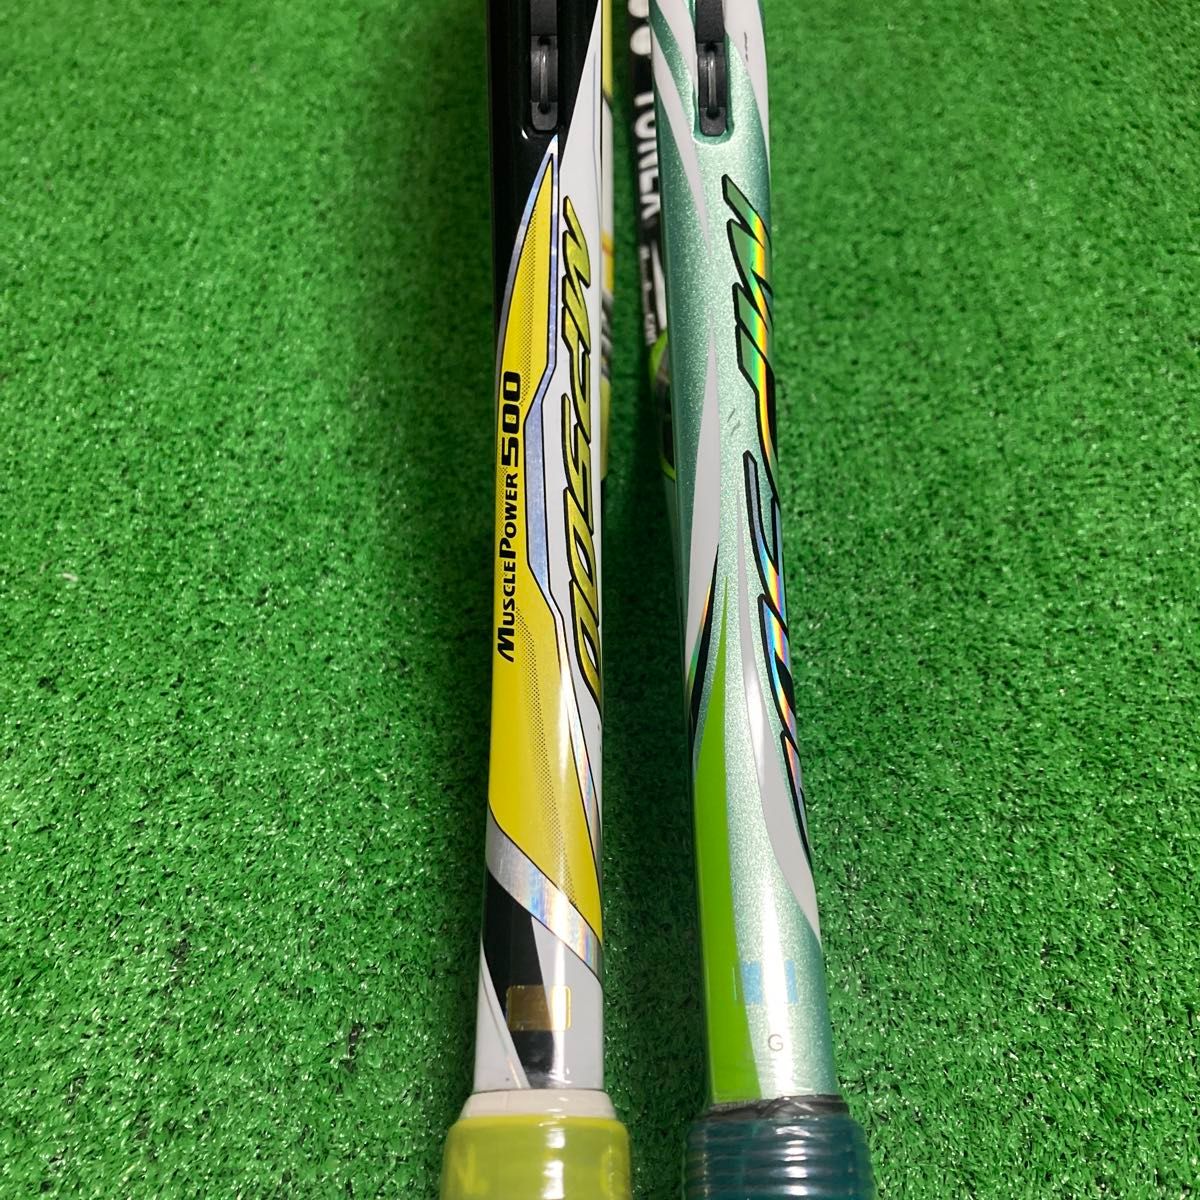 ソフトテニスラケット 軟式テニスラケット 初心者向け 初級者向け ジュニア向け YONEX ヨネックス MP200XF 軽量モデル